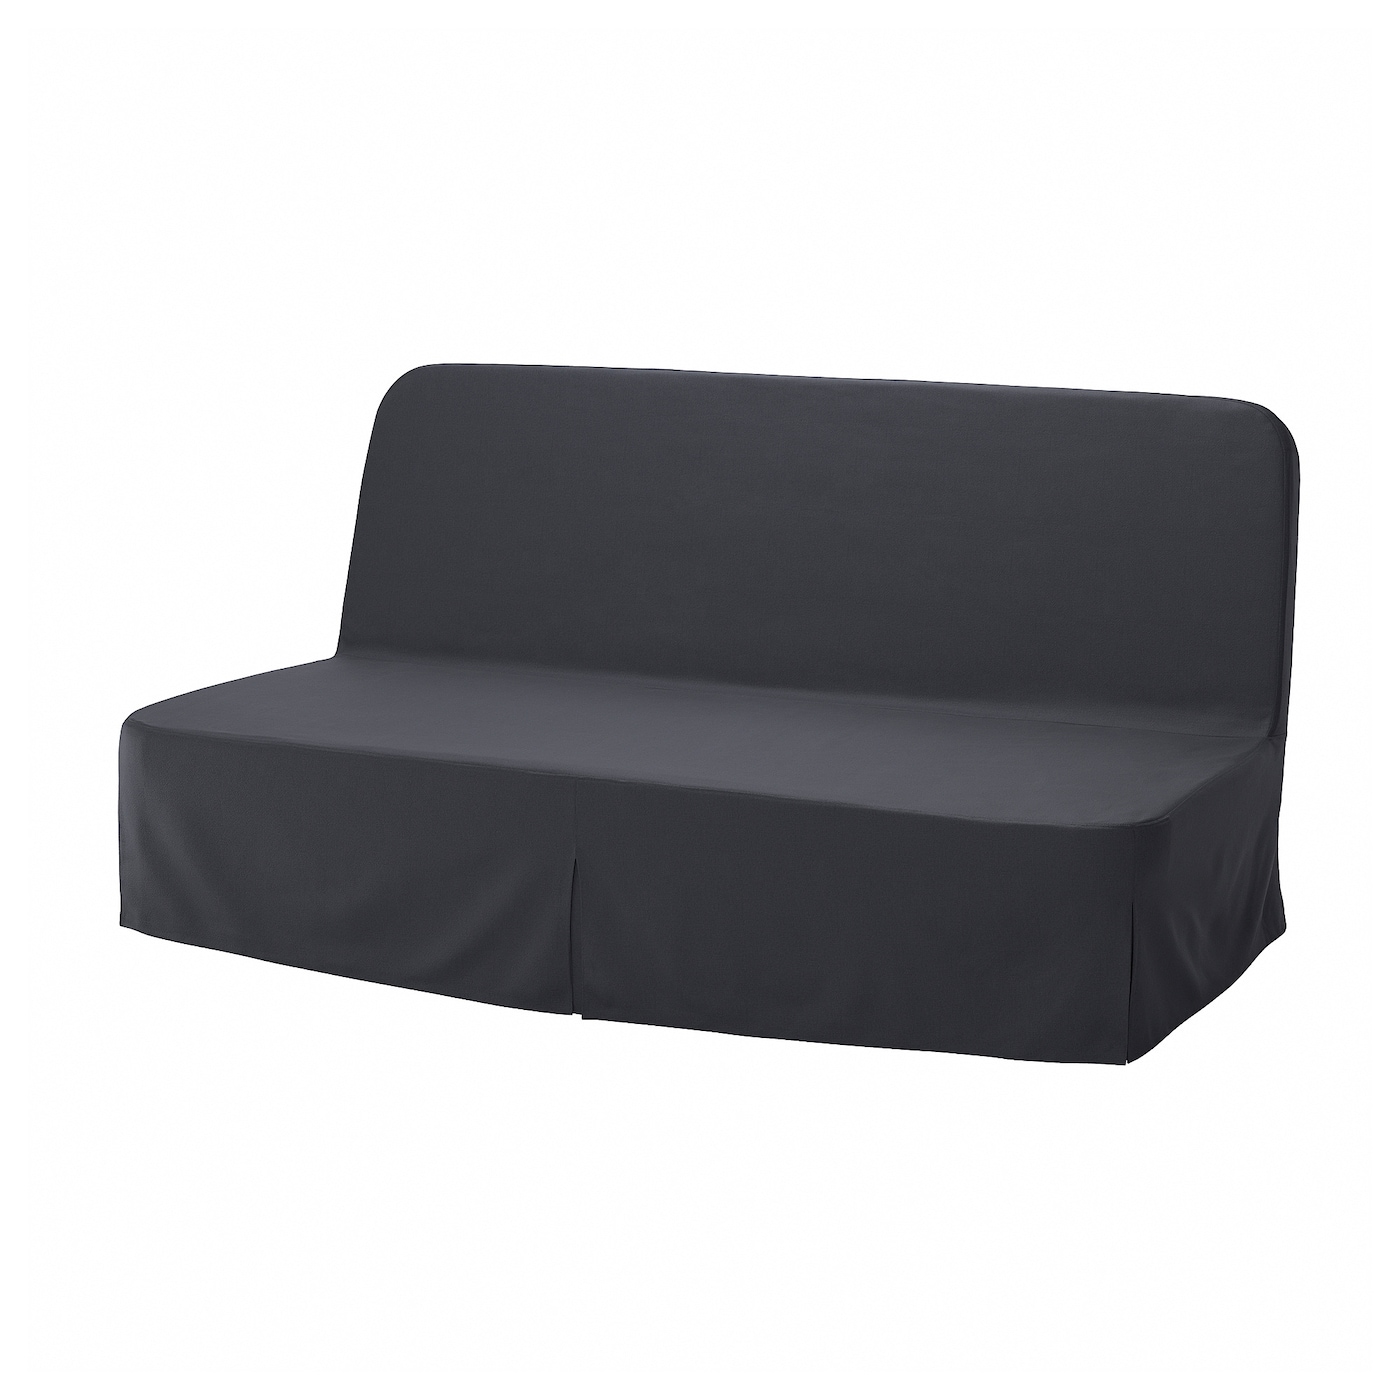 диван кровать тулон 3 торонто серый NYHAMN 3-местный диван-кровать с поролоновым матрасом Naggen/темно-серый IKEA